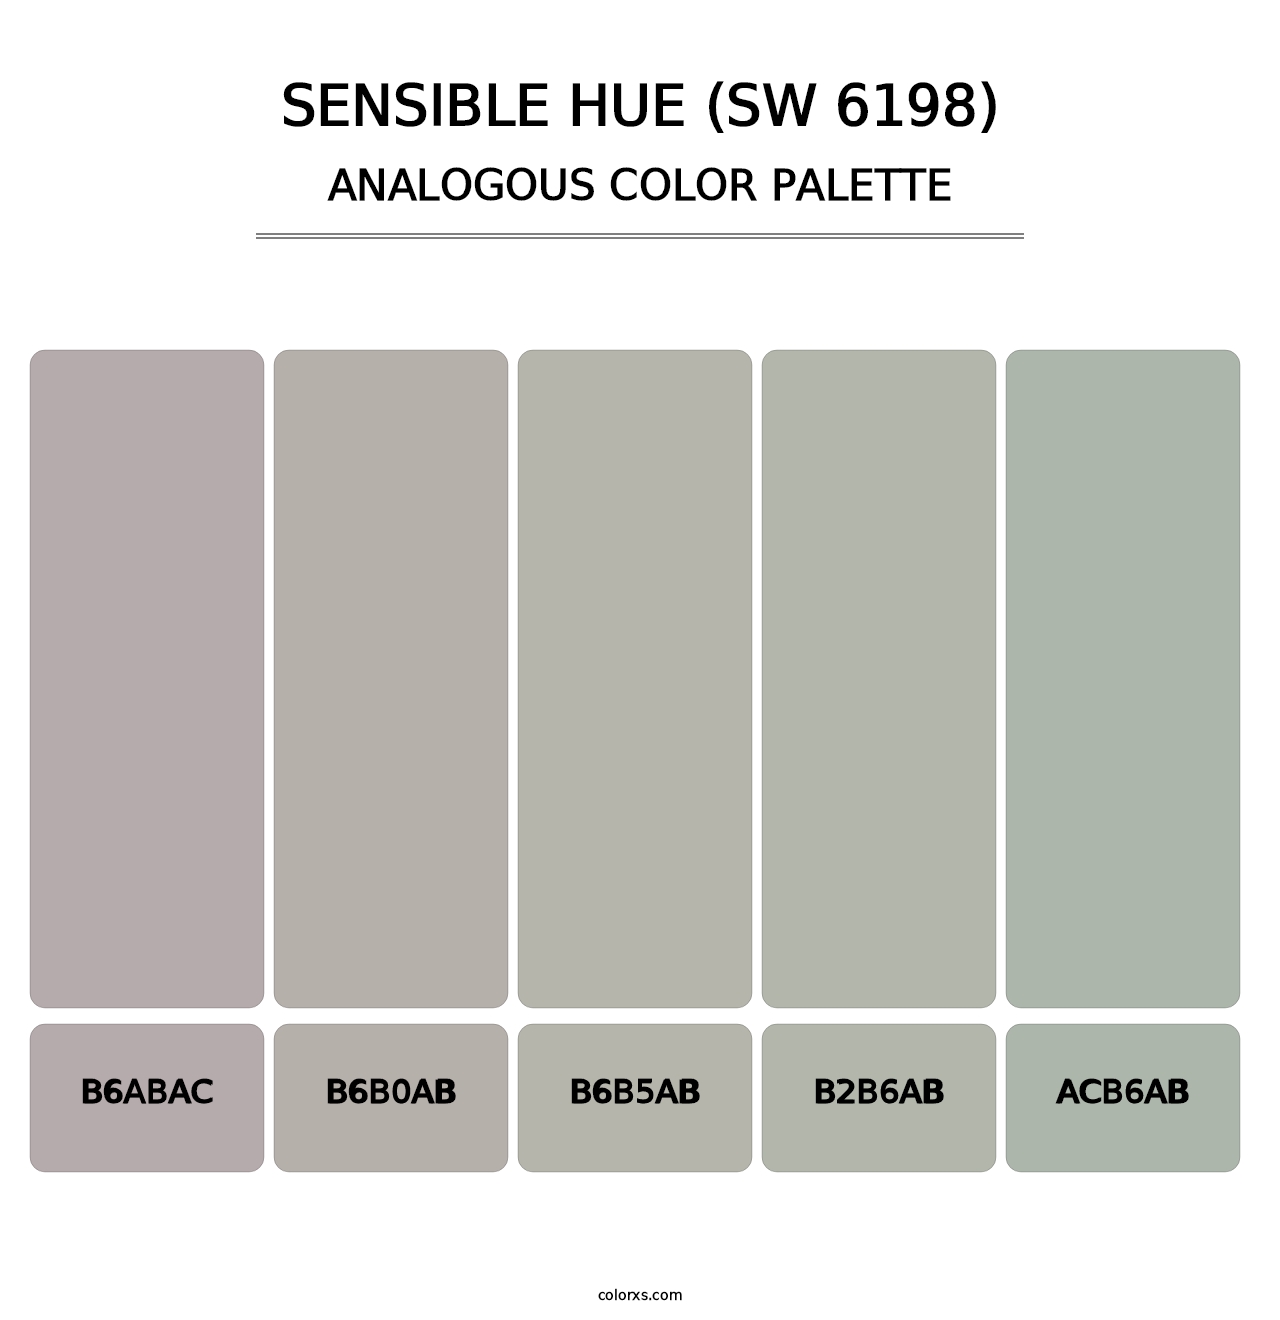 Sensible Hue (SW 6198) - Analogous Color Palette